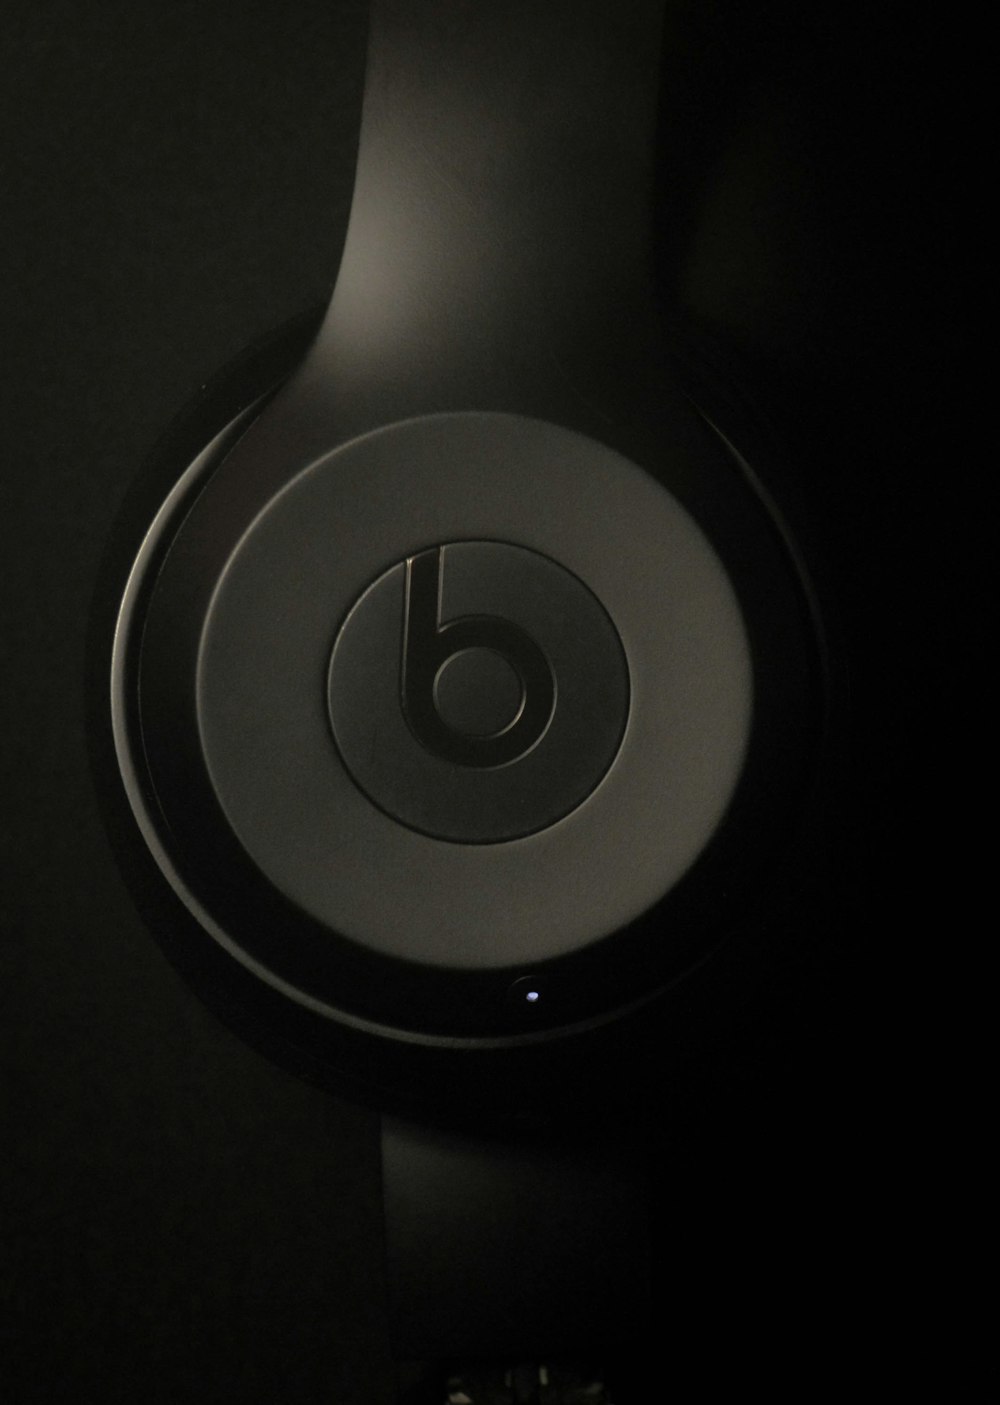 black Beats by Dr. Dre headphones